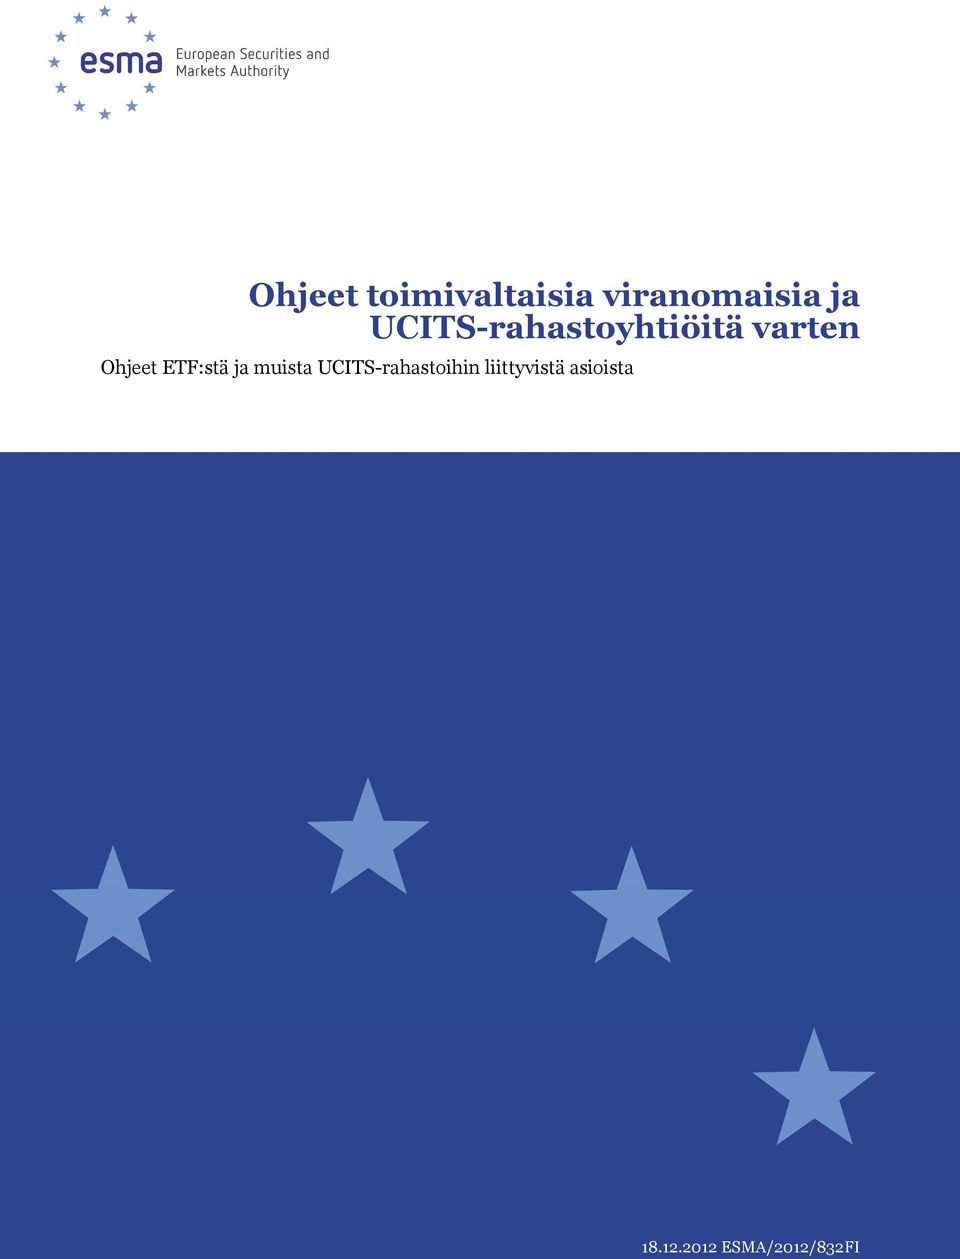 ETF:stä ja muista UCITS-rahastoihin